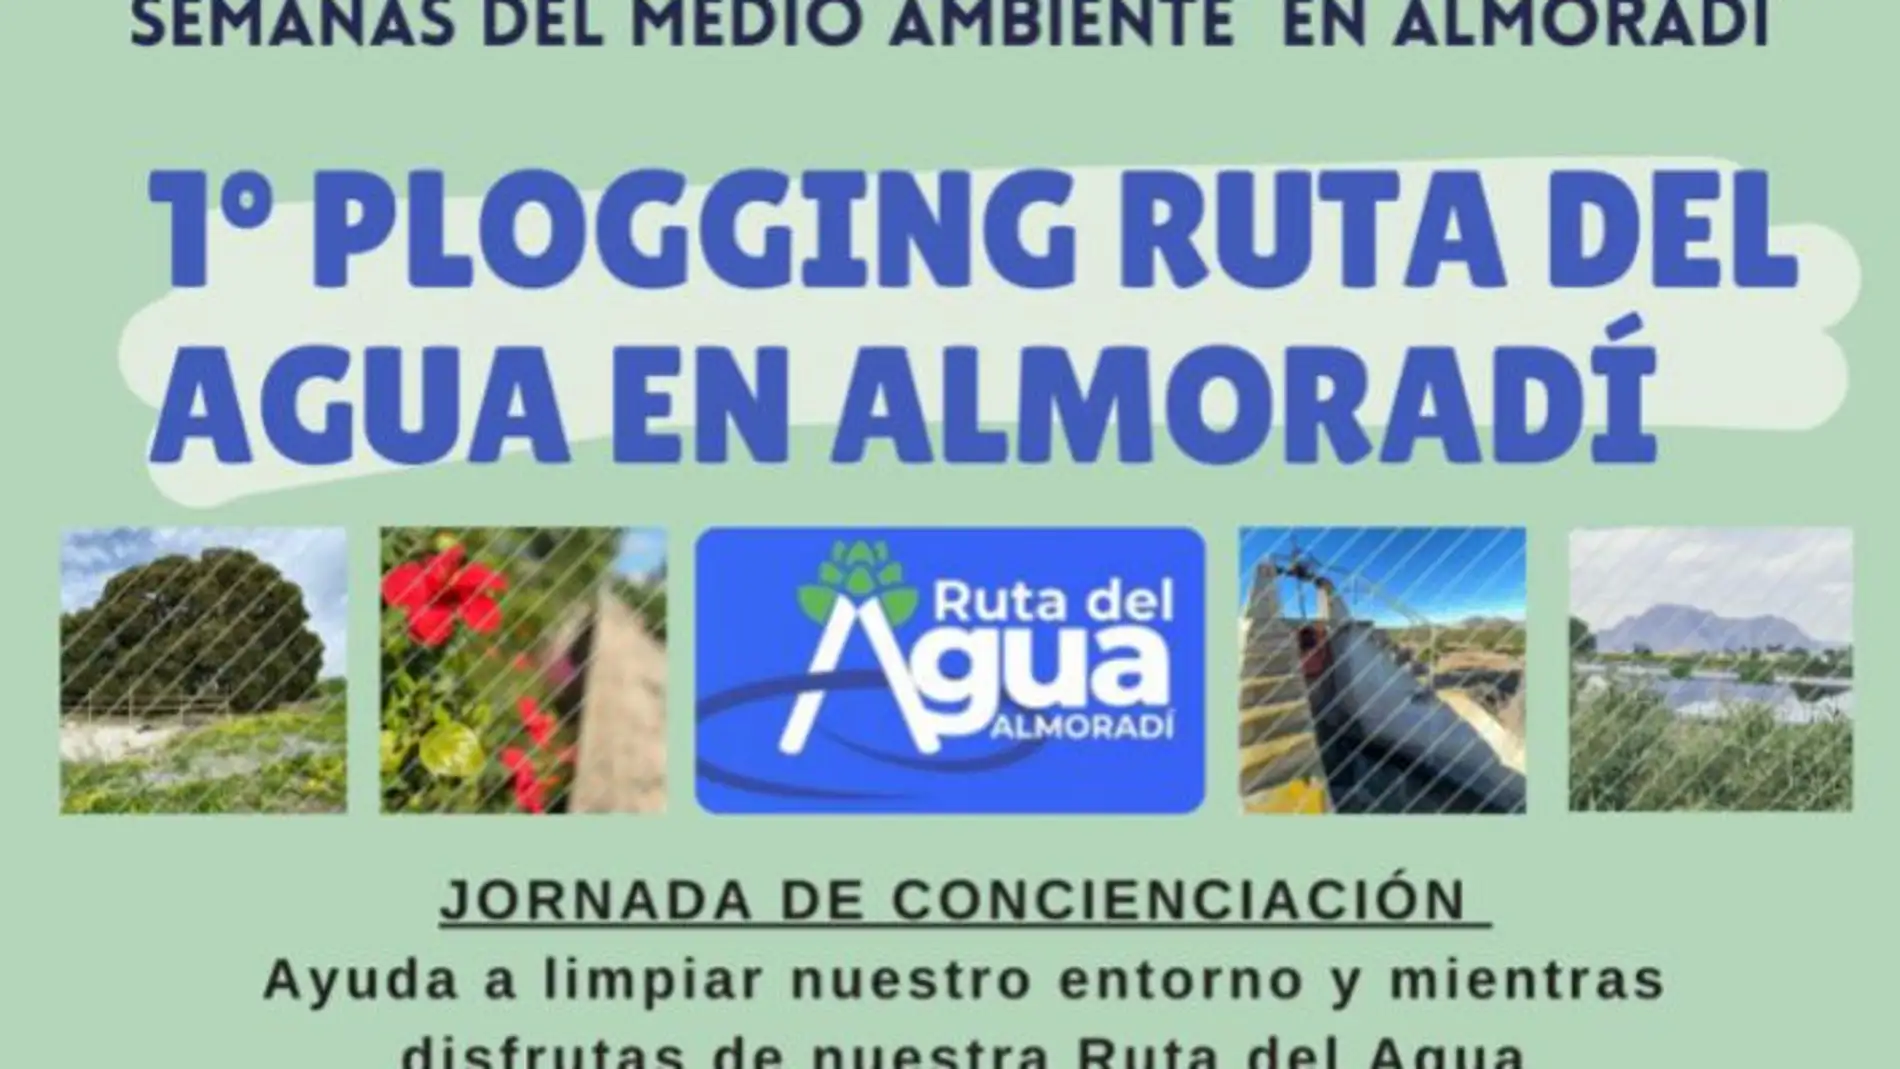  El próximo 29 de mayo, desde la Concejalía de Turismo del Ayuntamiento de Almoradí, organizamos el 1º Plogging Ruta del Agua de Almoradí 